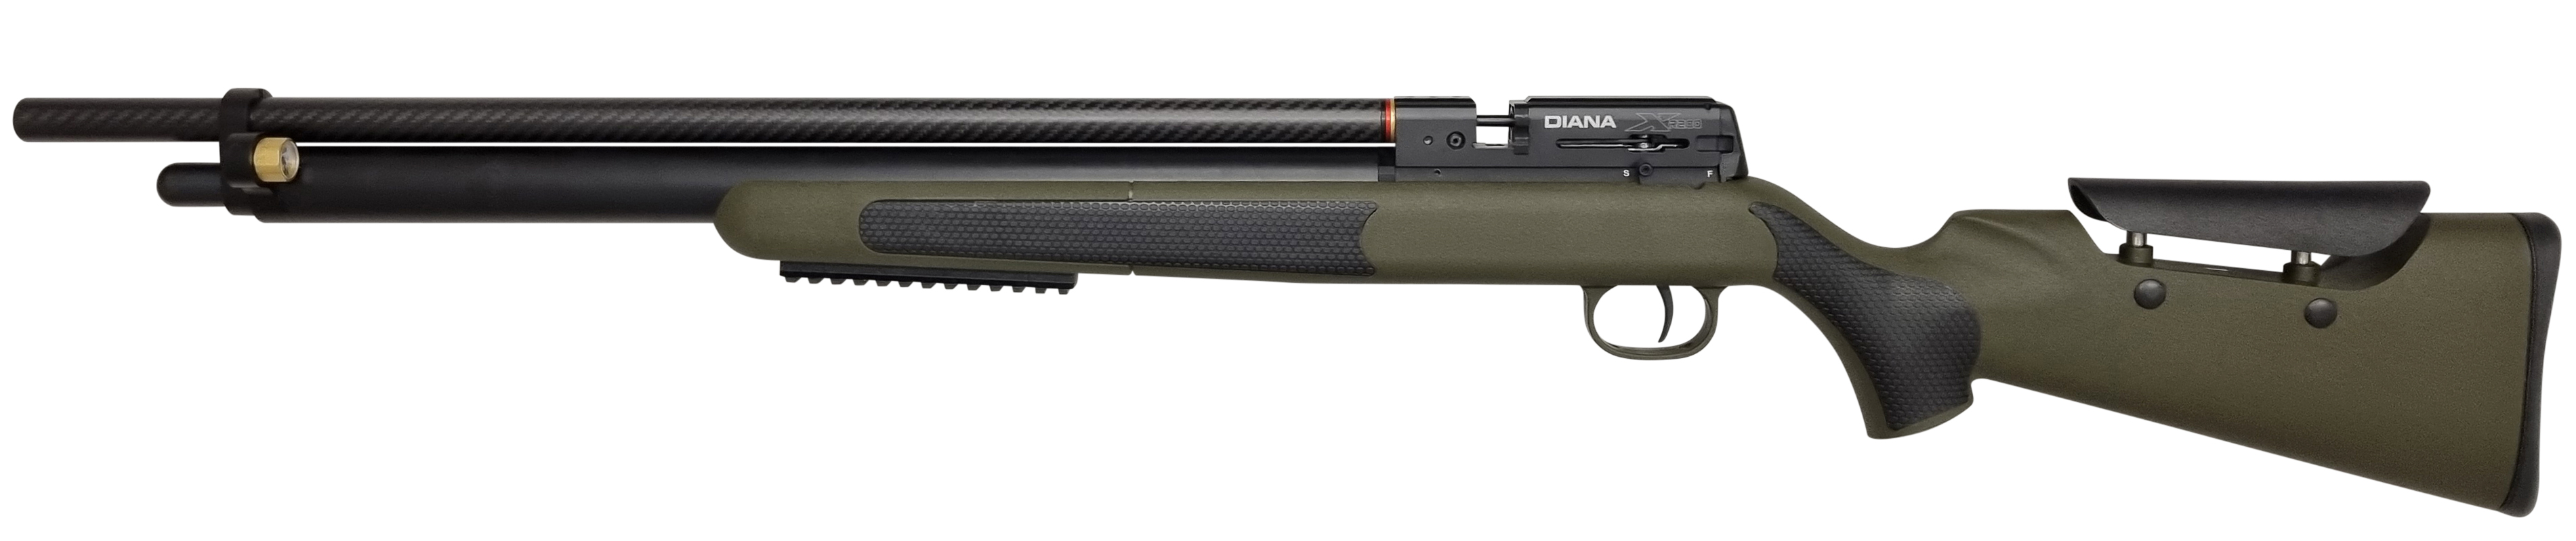 1105000 - DIANA Air Rifle XR-210  1.1642795267.jpg